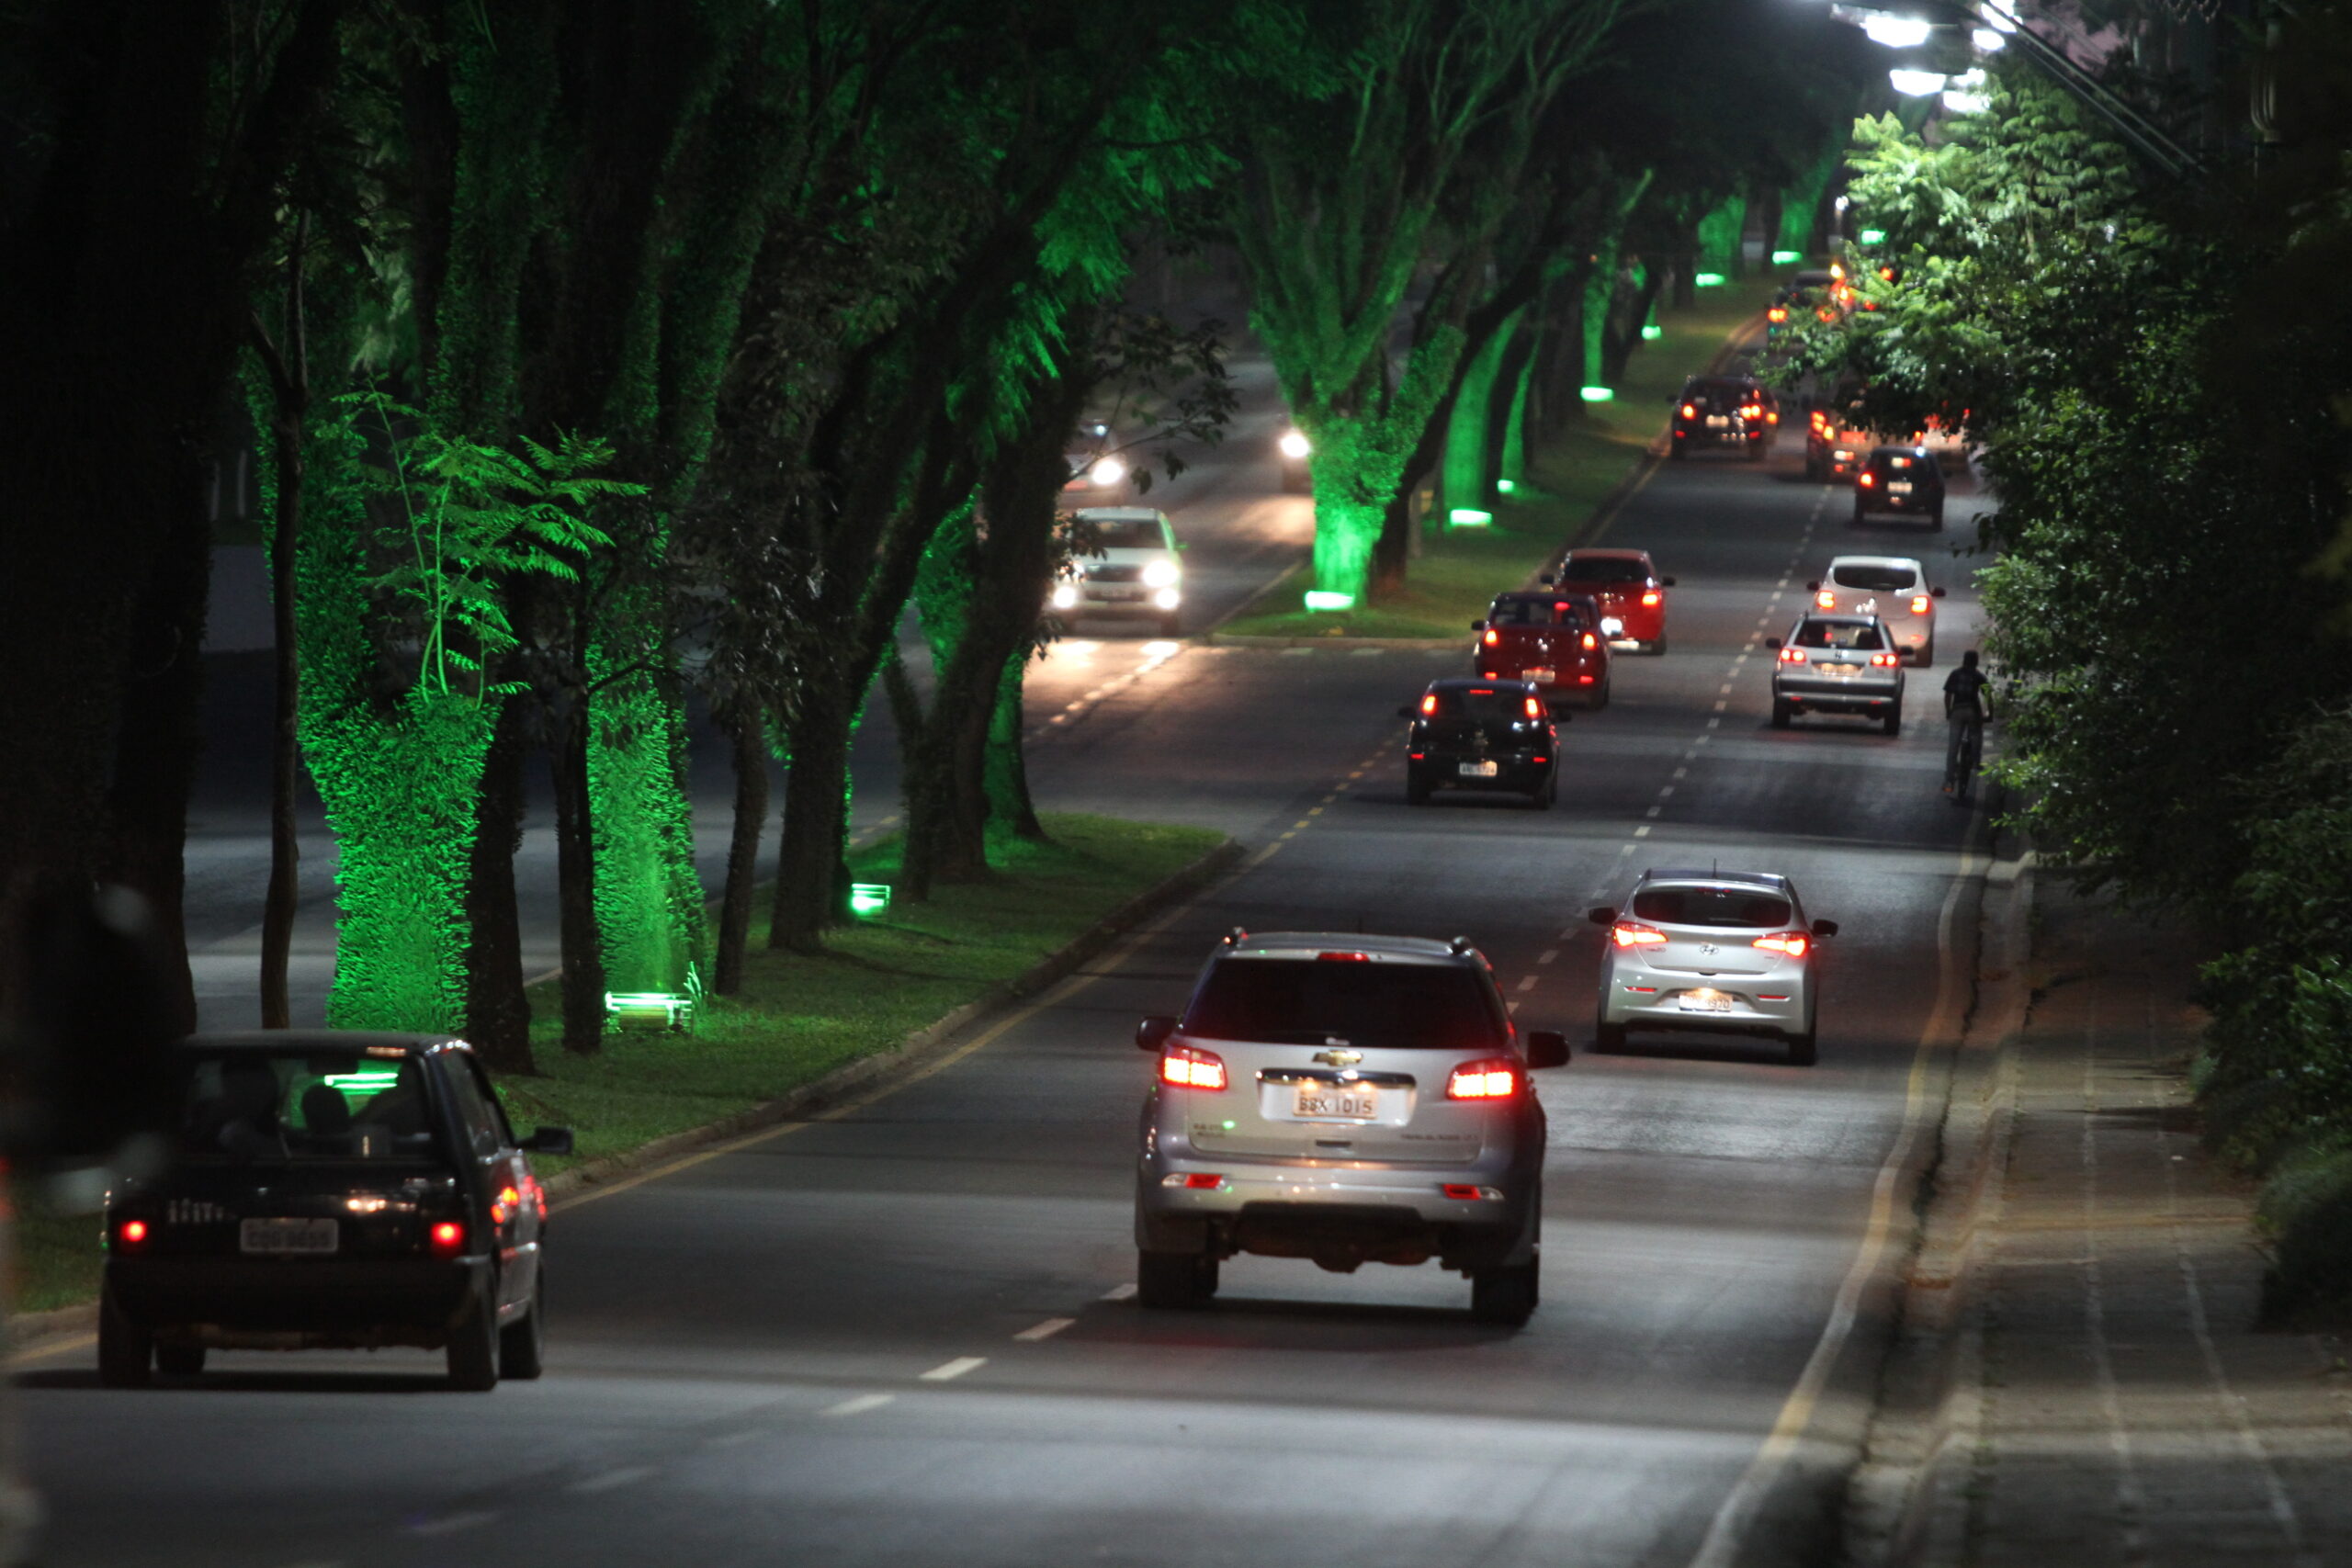 Foto noturna da Avenida Visconde de Mauá, no Bairro Oficinas, em Ponta Grossa